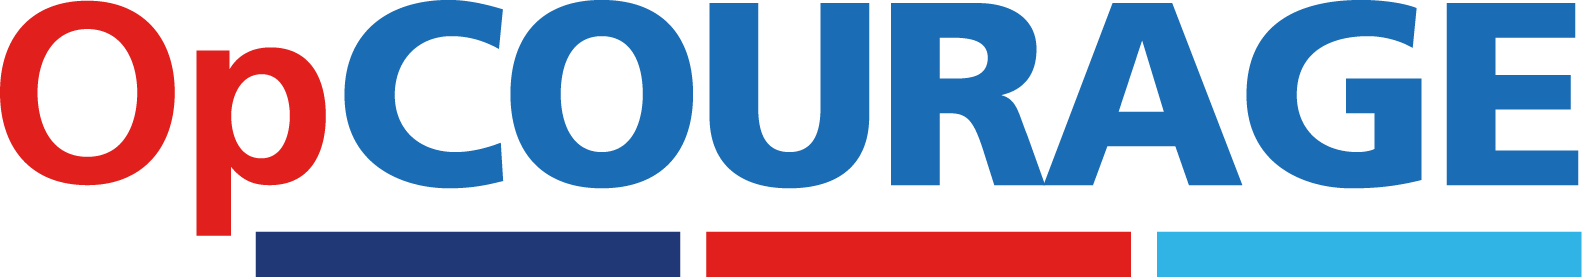 Op Courage logo